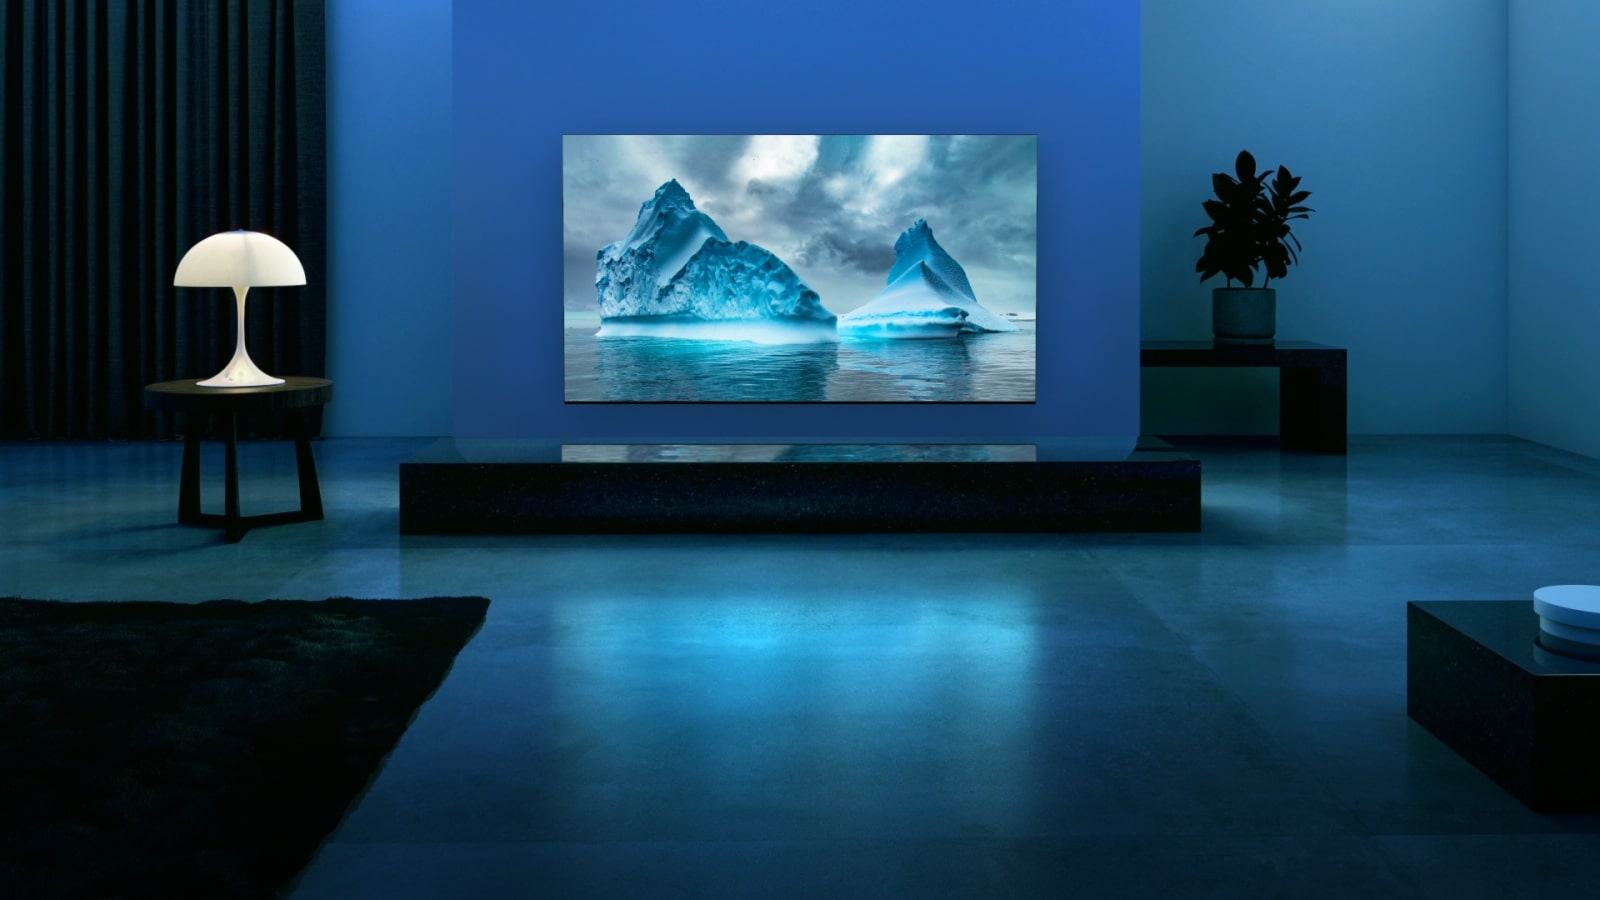 Một mạch neon màu xanh di chuyển xung quanh trên hình ảnh sông băng màu xanh. Camera phóng to và hiển thị sông băng màu xanh này trong màn hình TV. TV được đặt trong phòng khách rộng với nền màu xanh. 